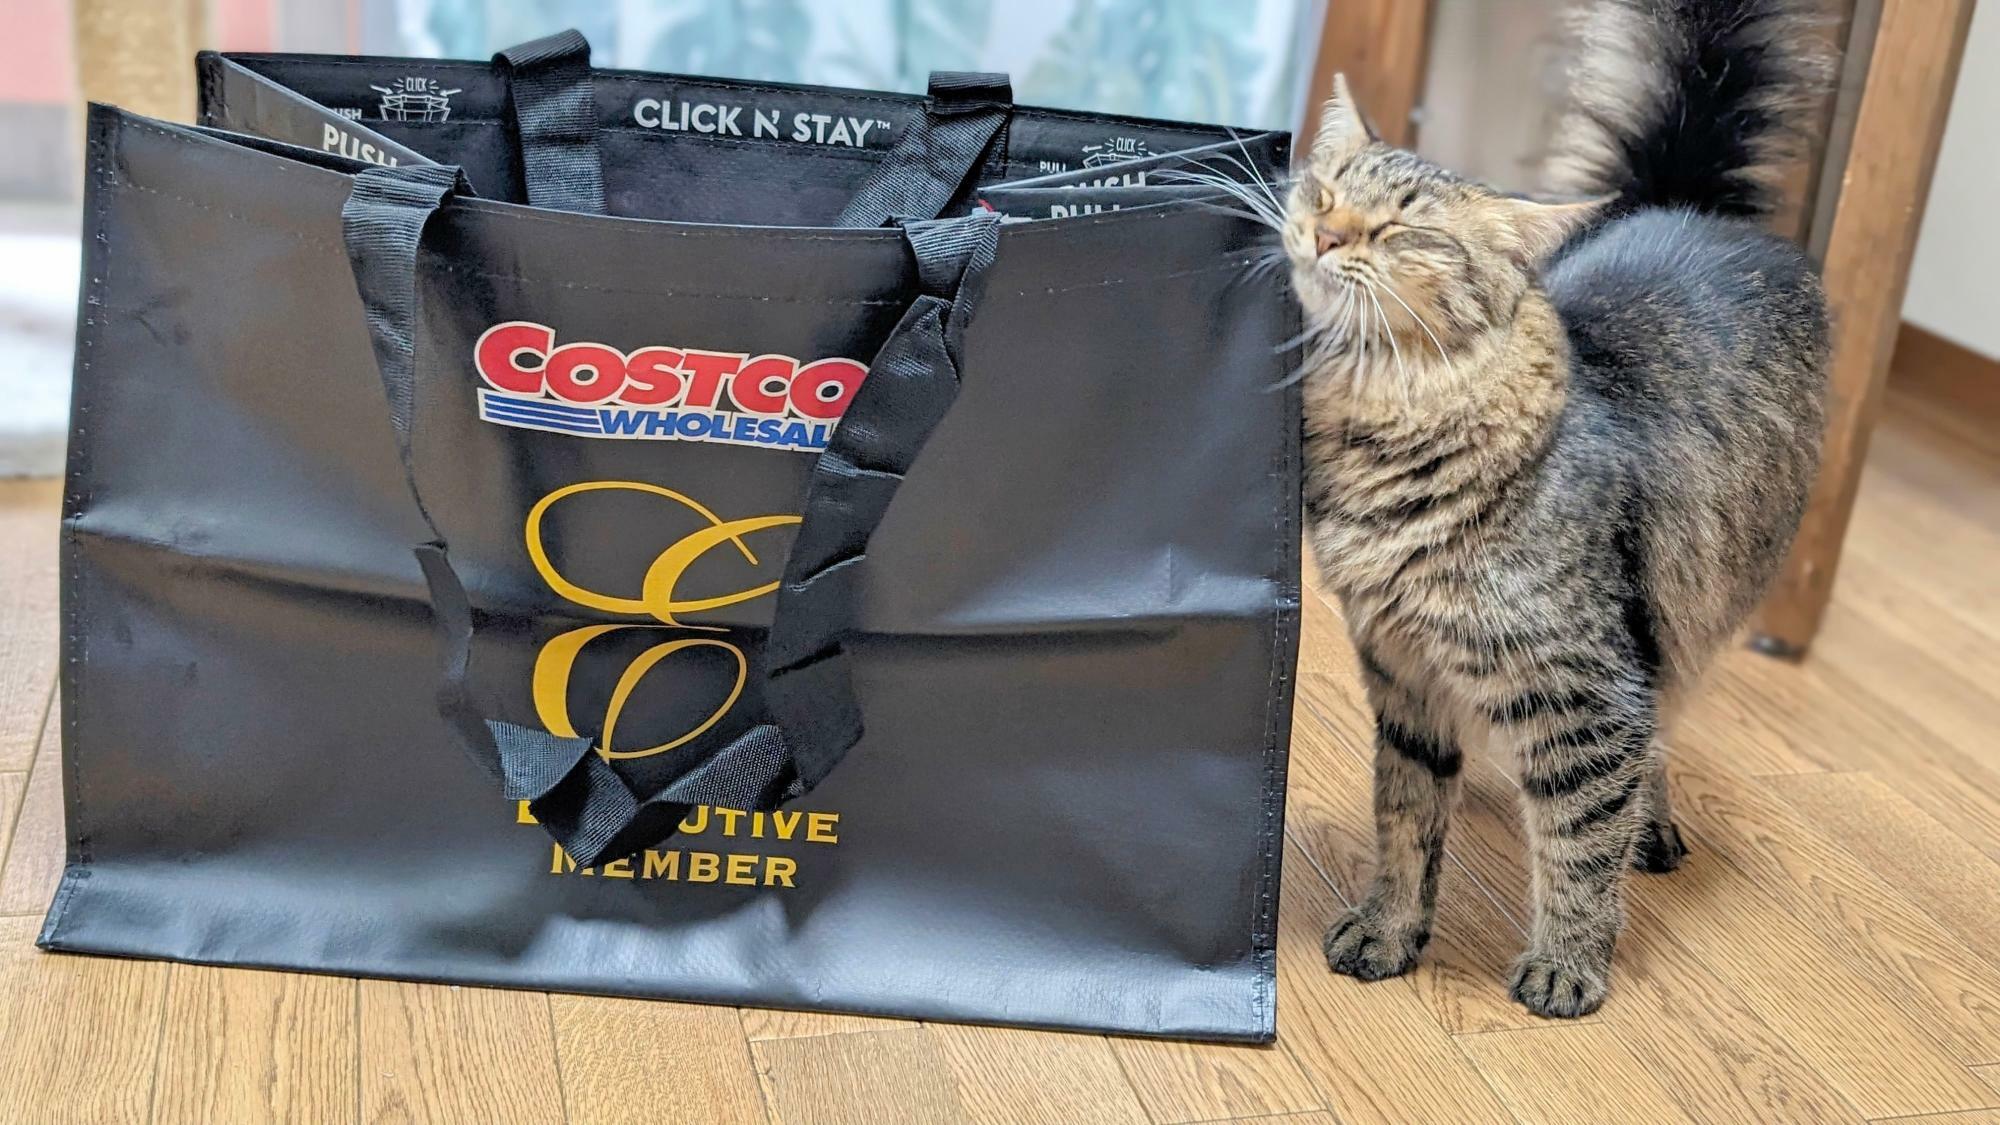 エグゼクティブ会員入会特典のショッピングバッグはマチ付きのビッグサイズ。うちの猫ちゃんもお気に入り